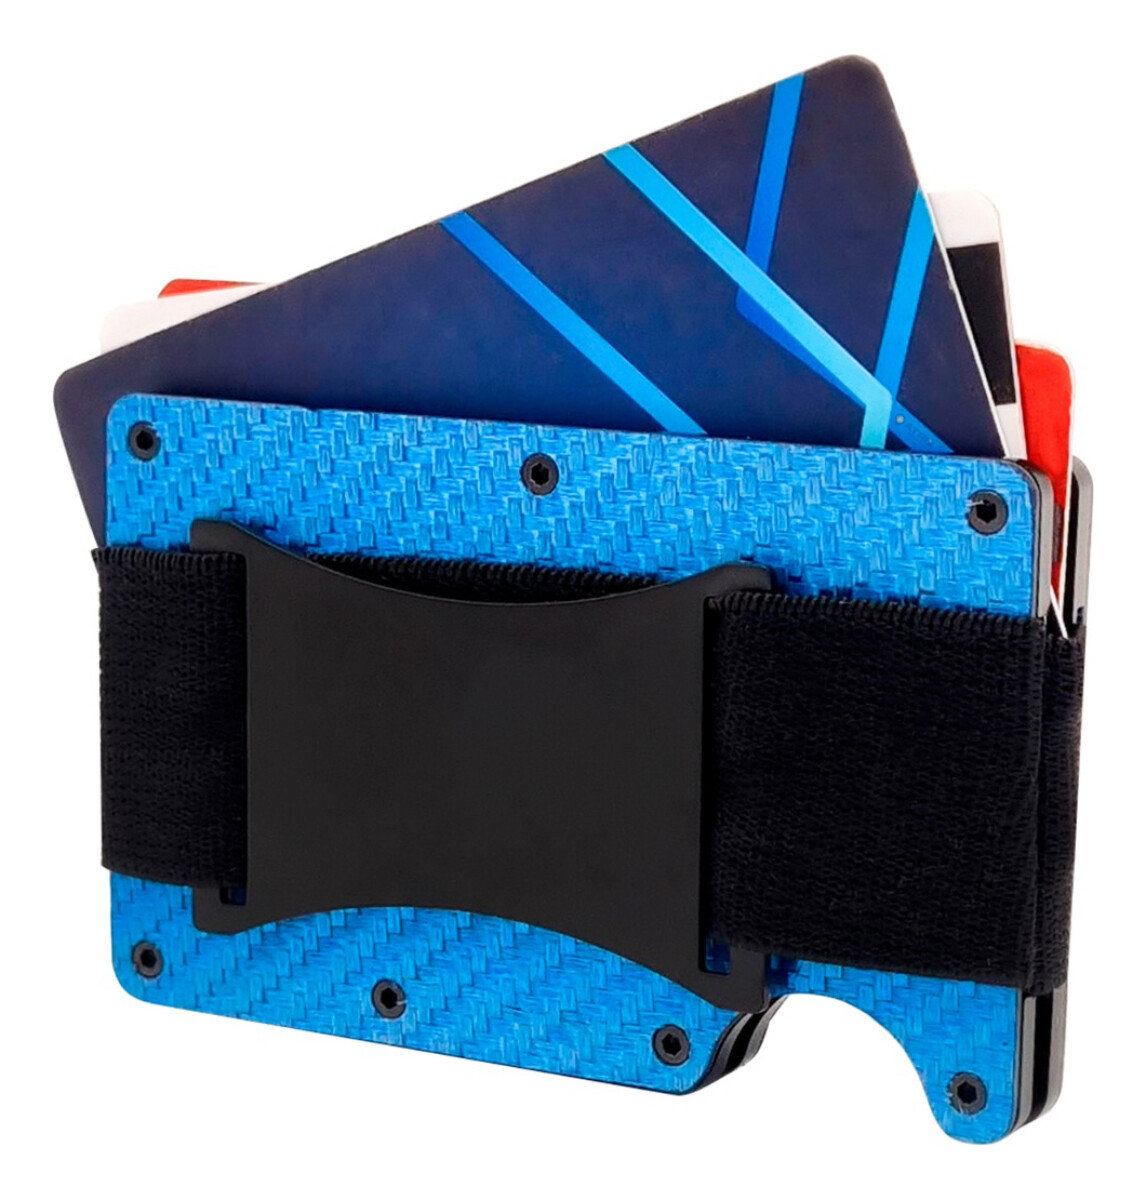 Billetera Tarjetero Bloqueo Rfid Anti Clonación Calidad - Variante Color Azul Labrado 